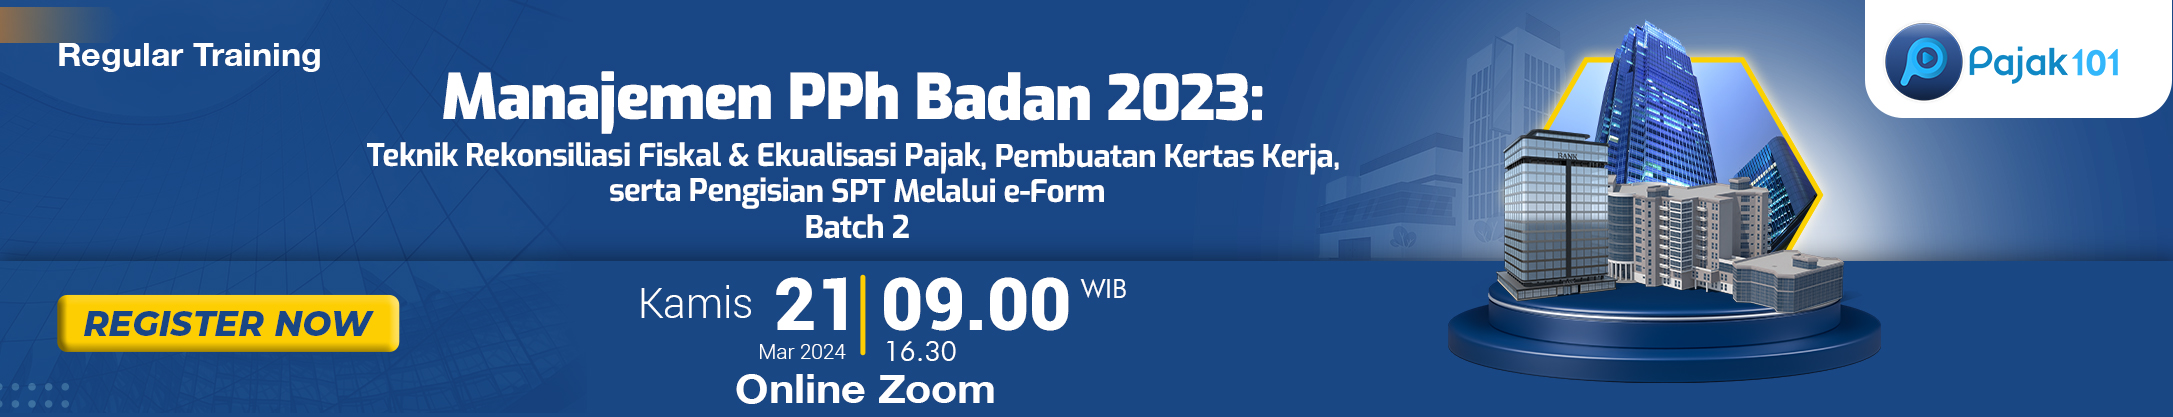 Manajemen PPh Badan 2023 batch 2